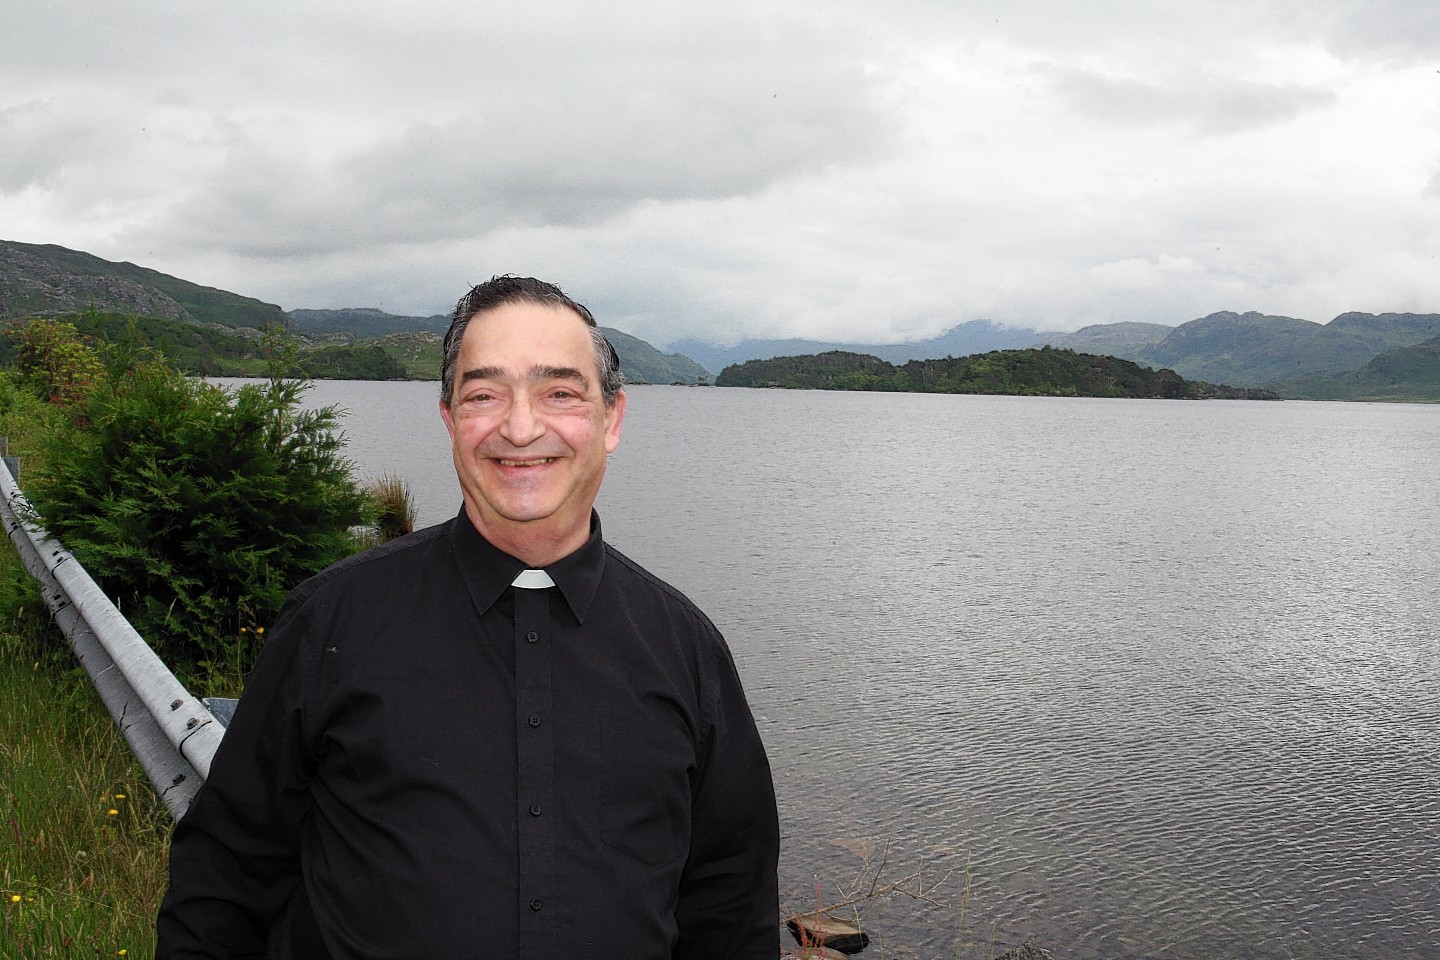 Father Joe Calleja is holding open air mass